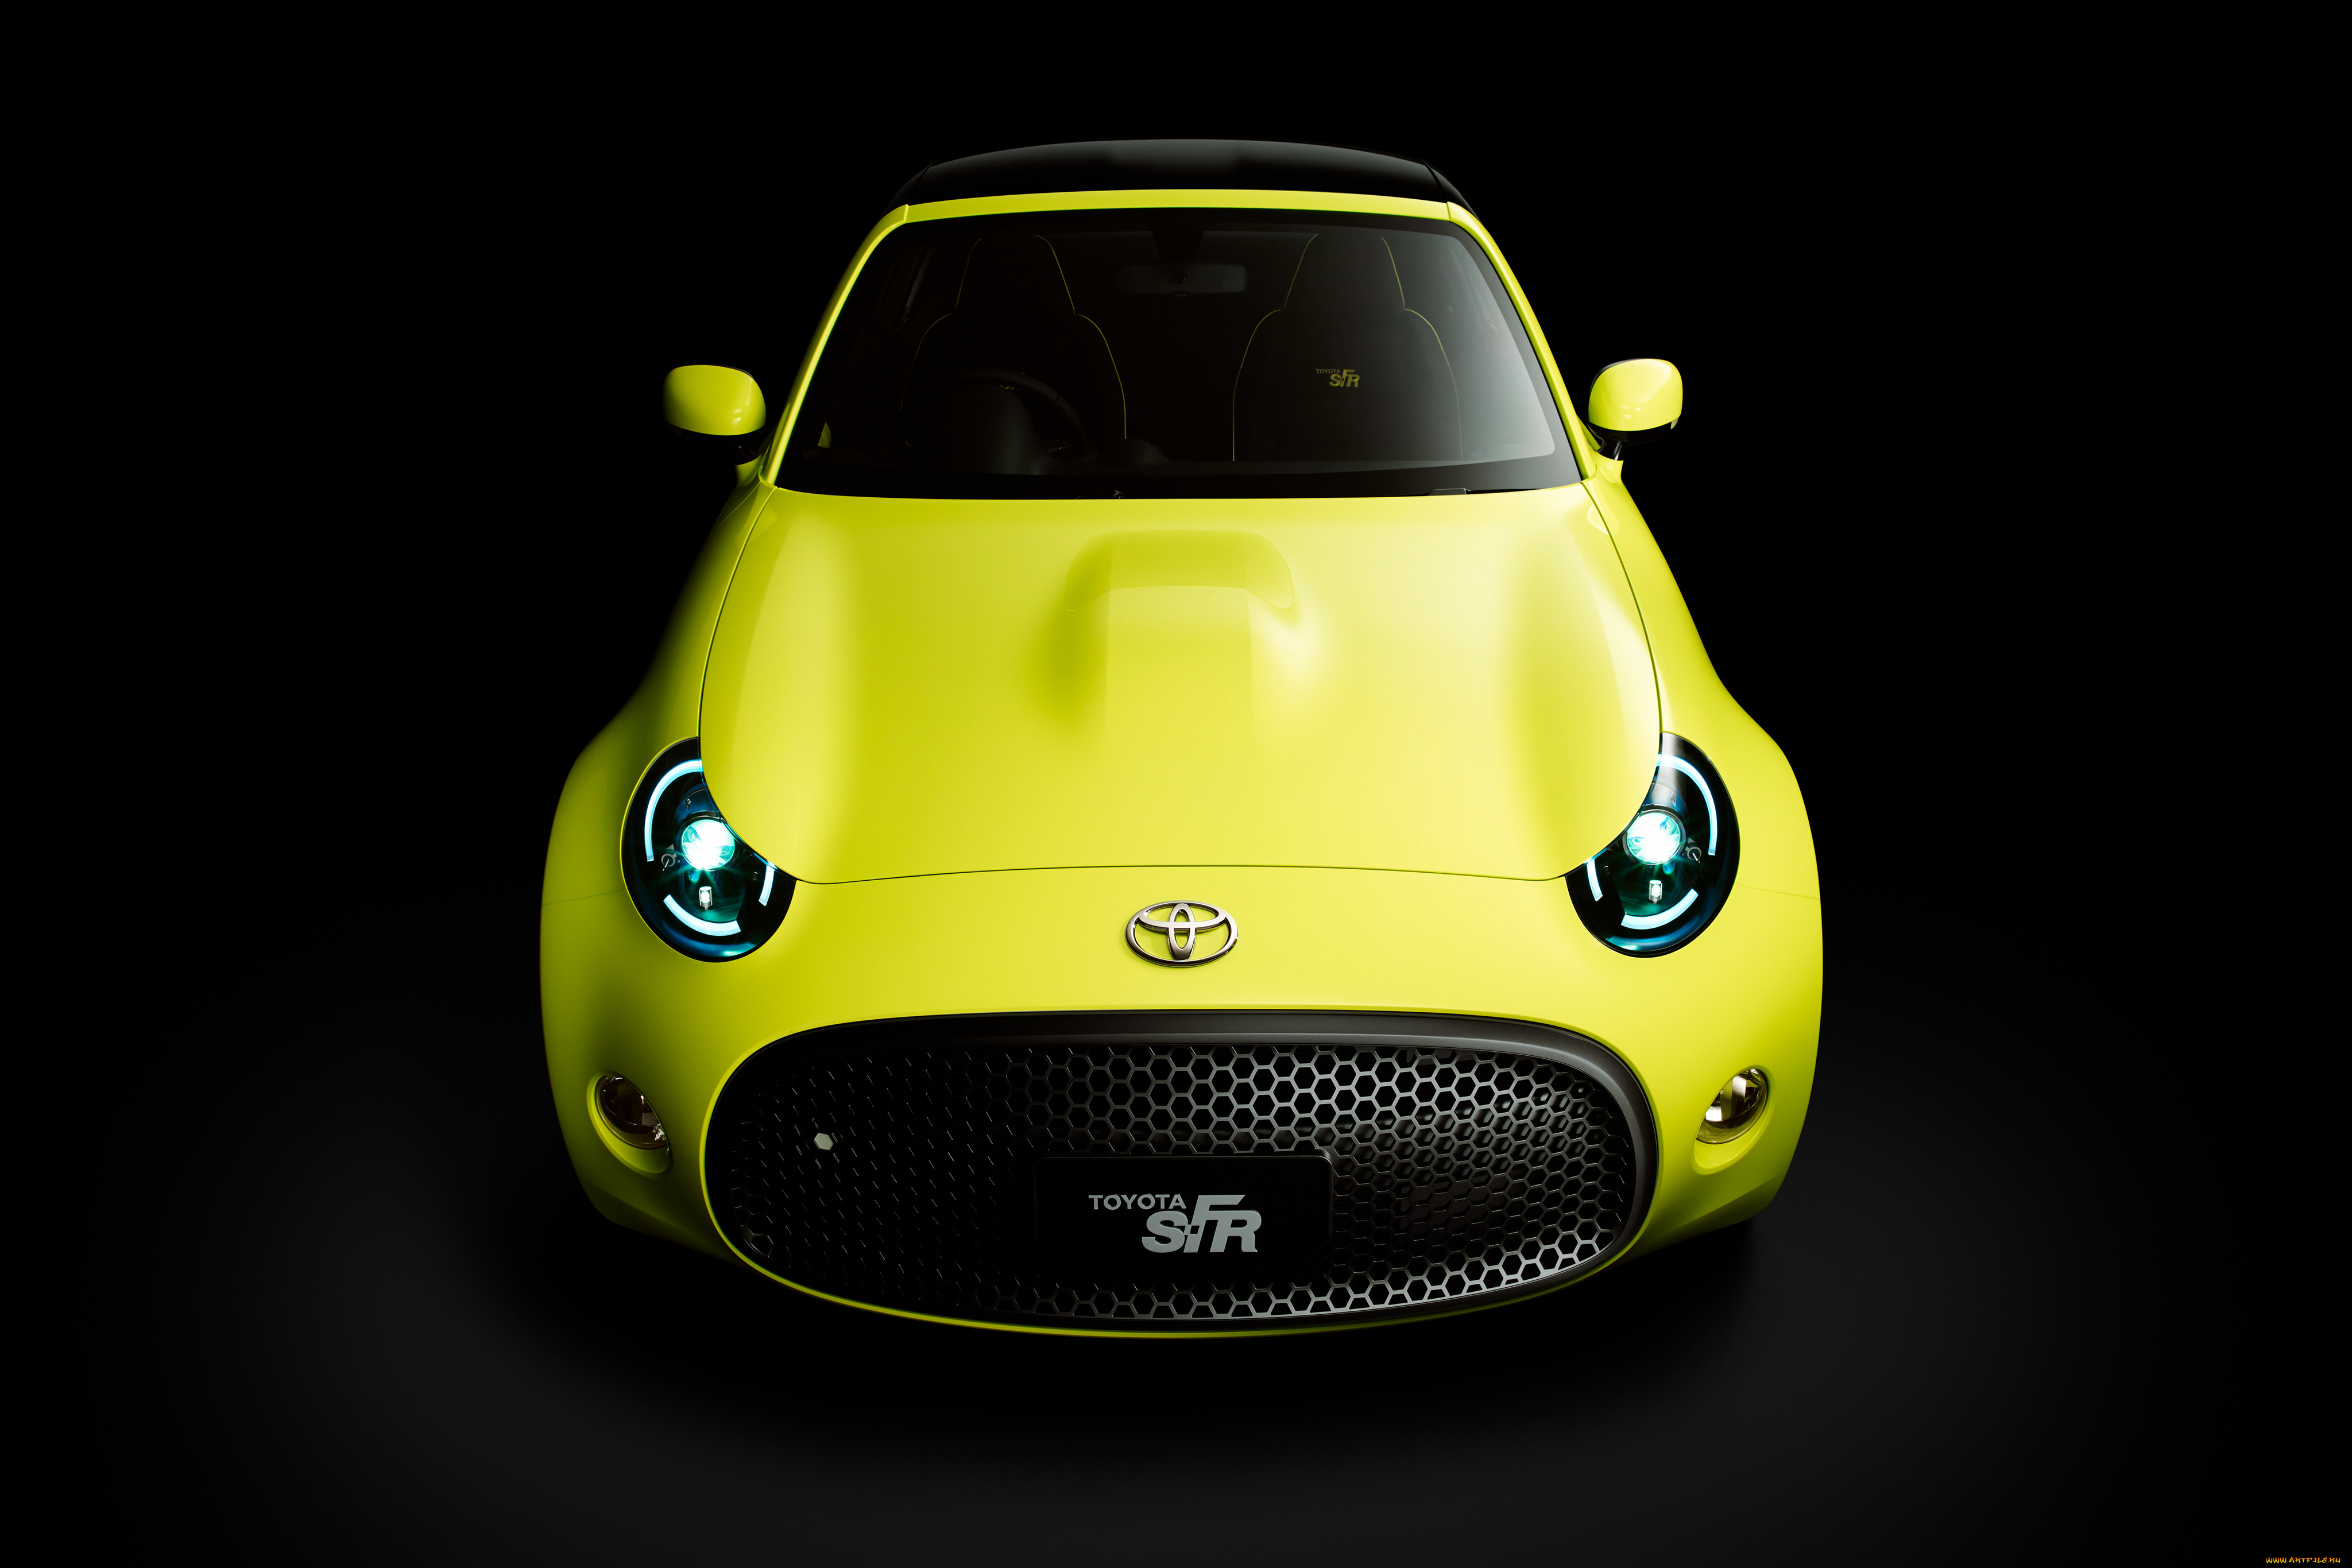 автомобили, toyota, желтый, 2015г, s-fr, concept